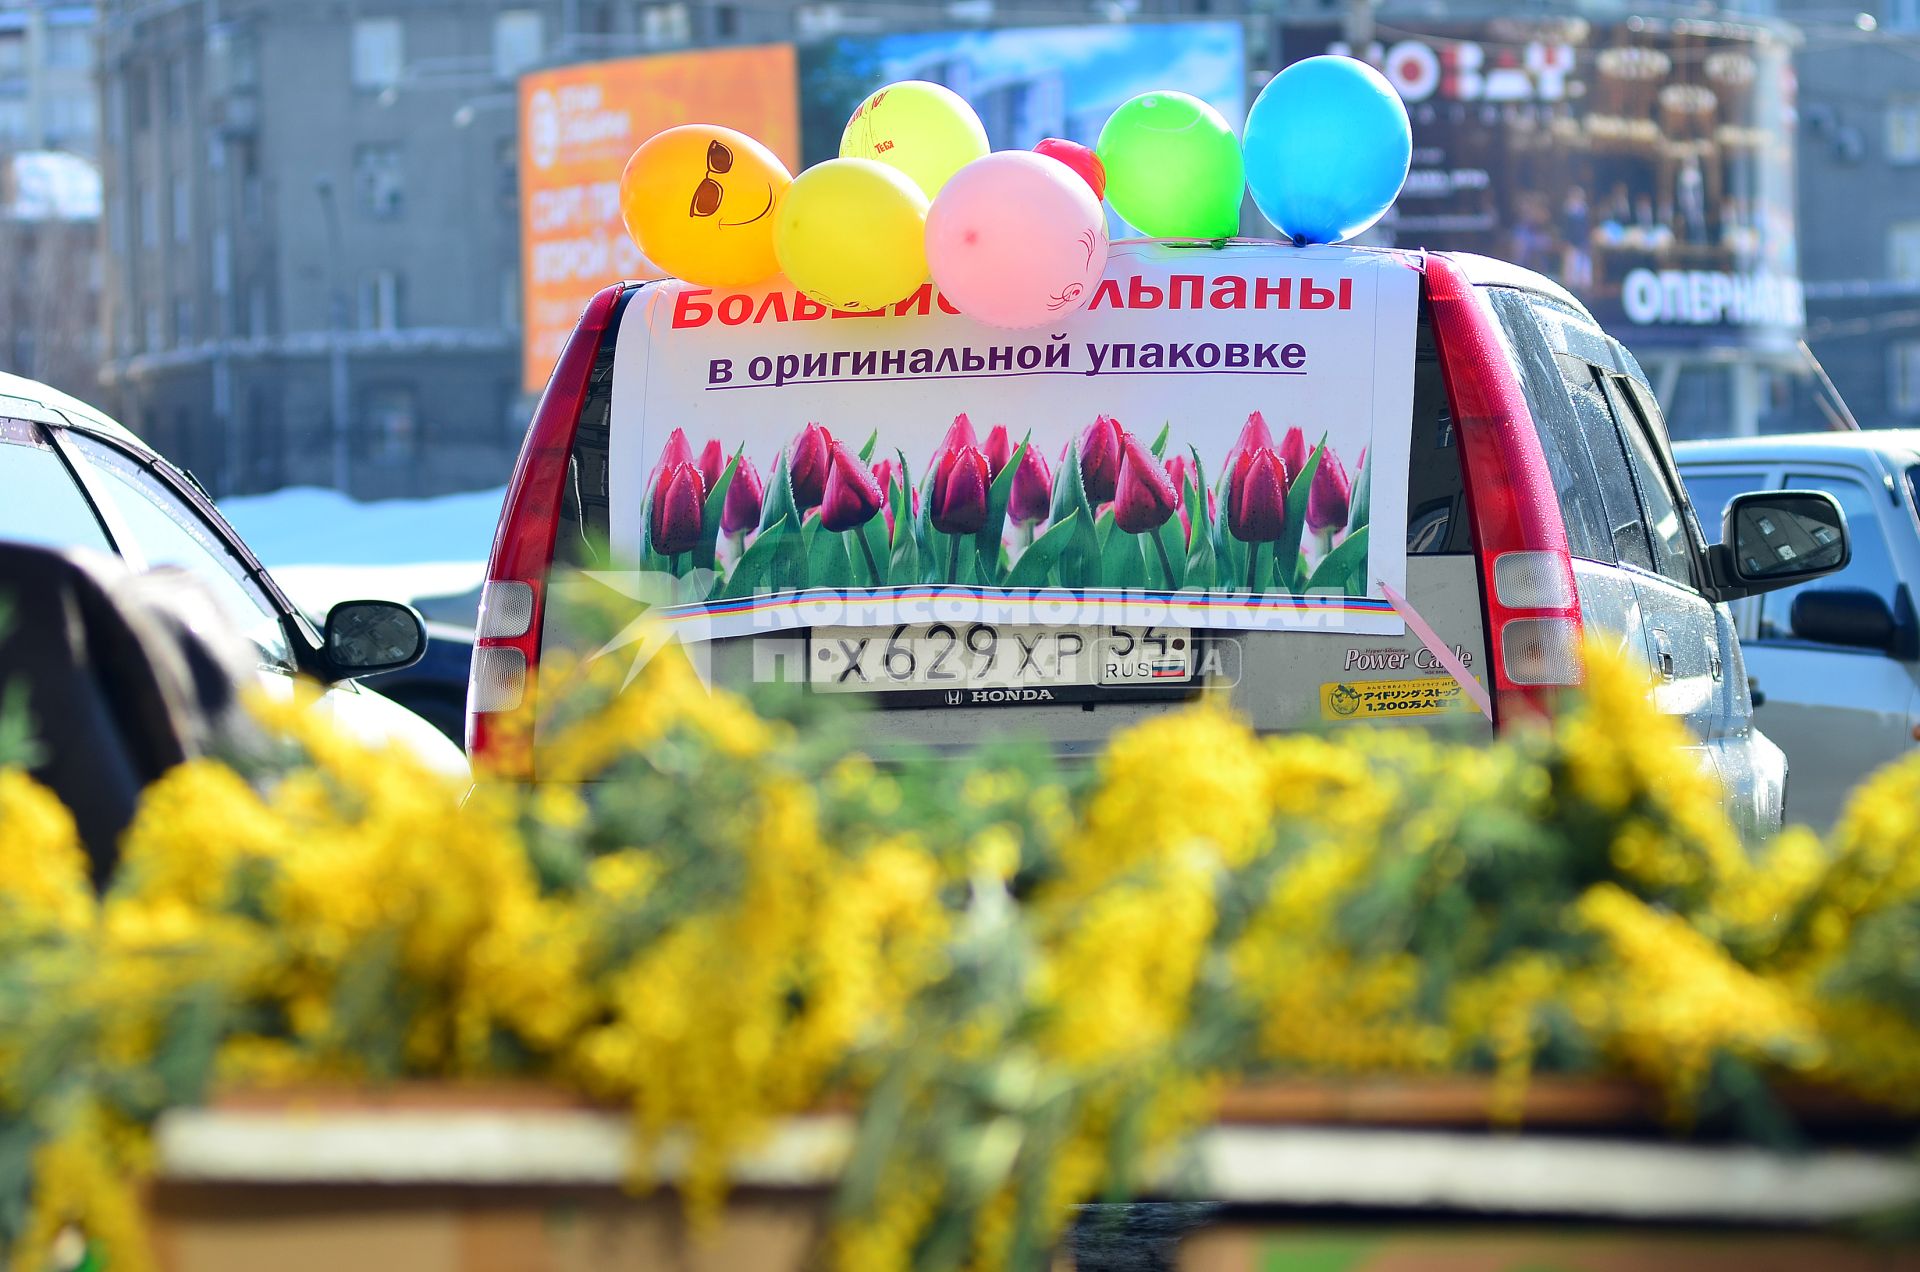 Новосибирск. Торговля цветами на улице города.